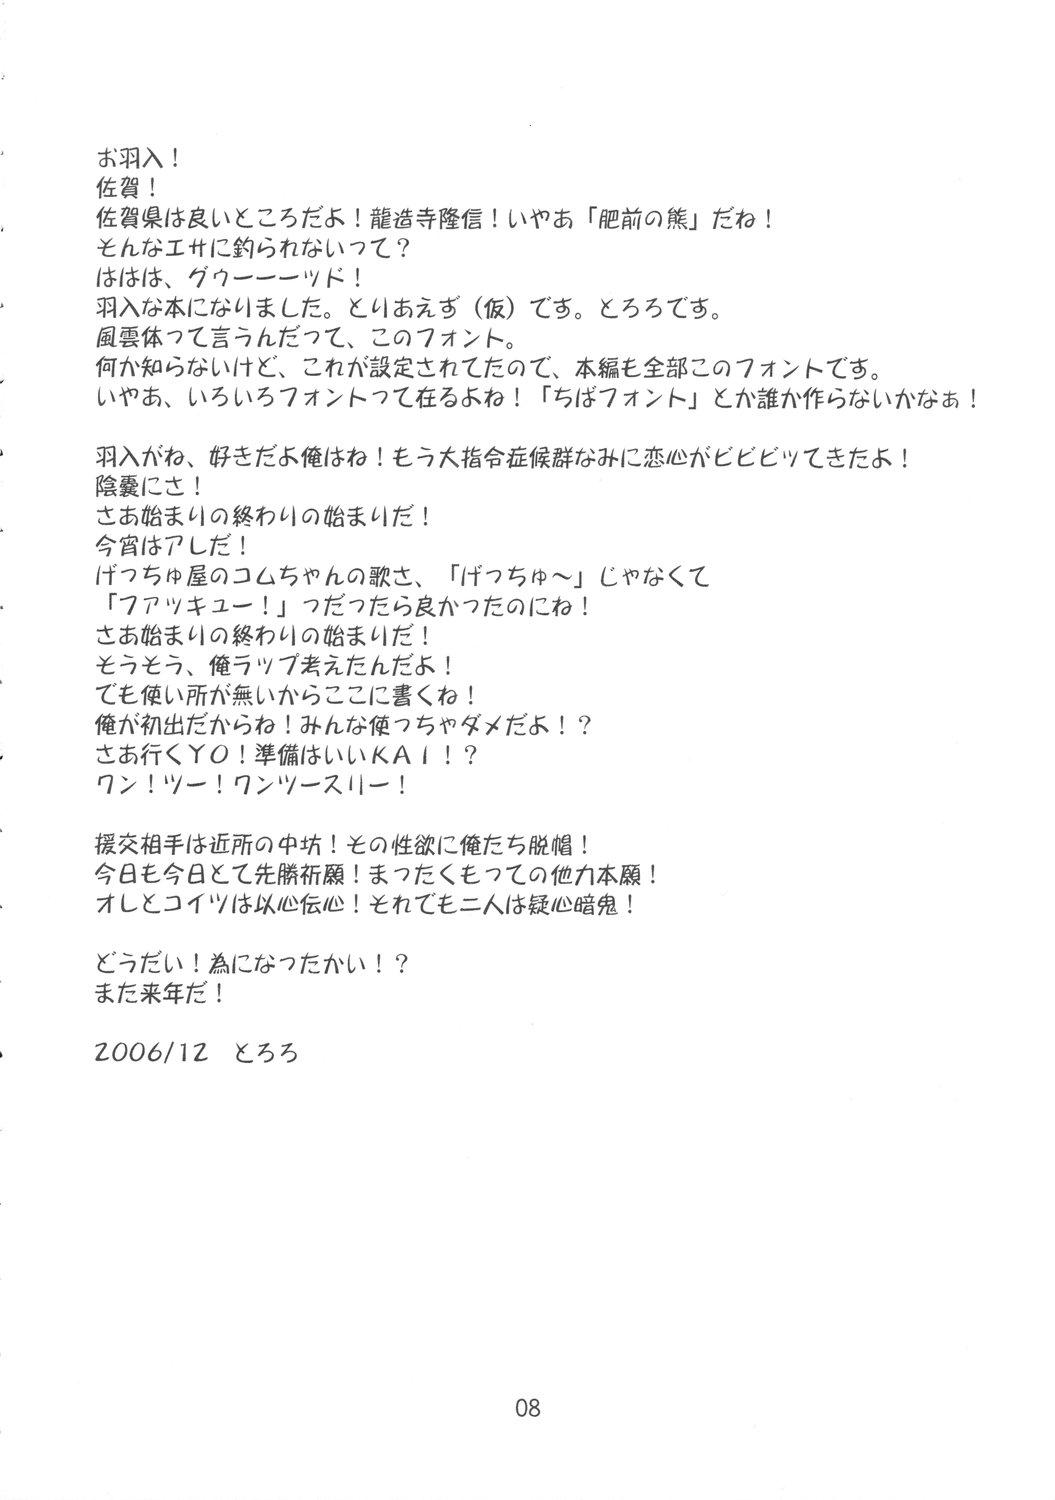 Suruba Yume no Kakera - Higurashi no naku koro ni Gapes Gaping Asshole - Page 7